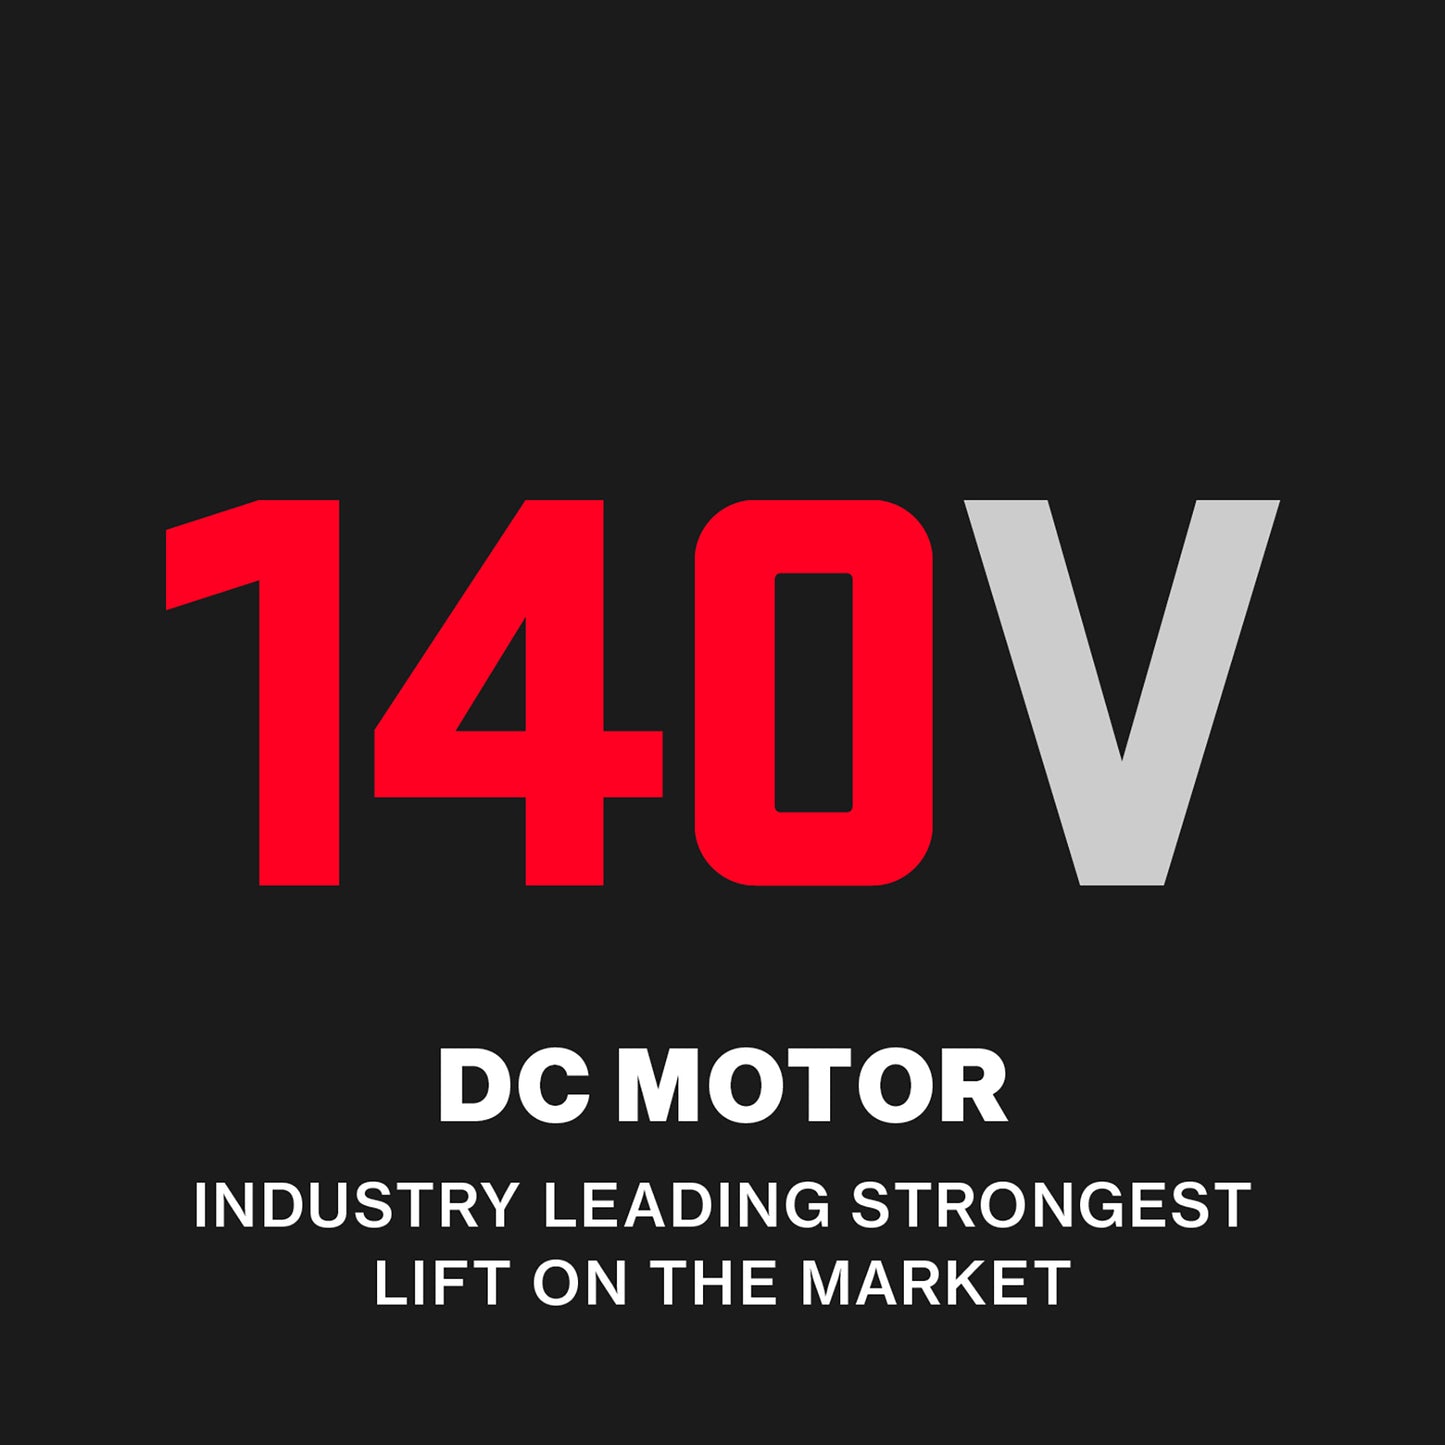 140V DC Motor industry leading garage door opener motor 